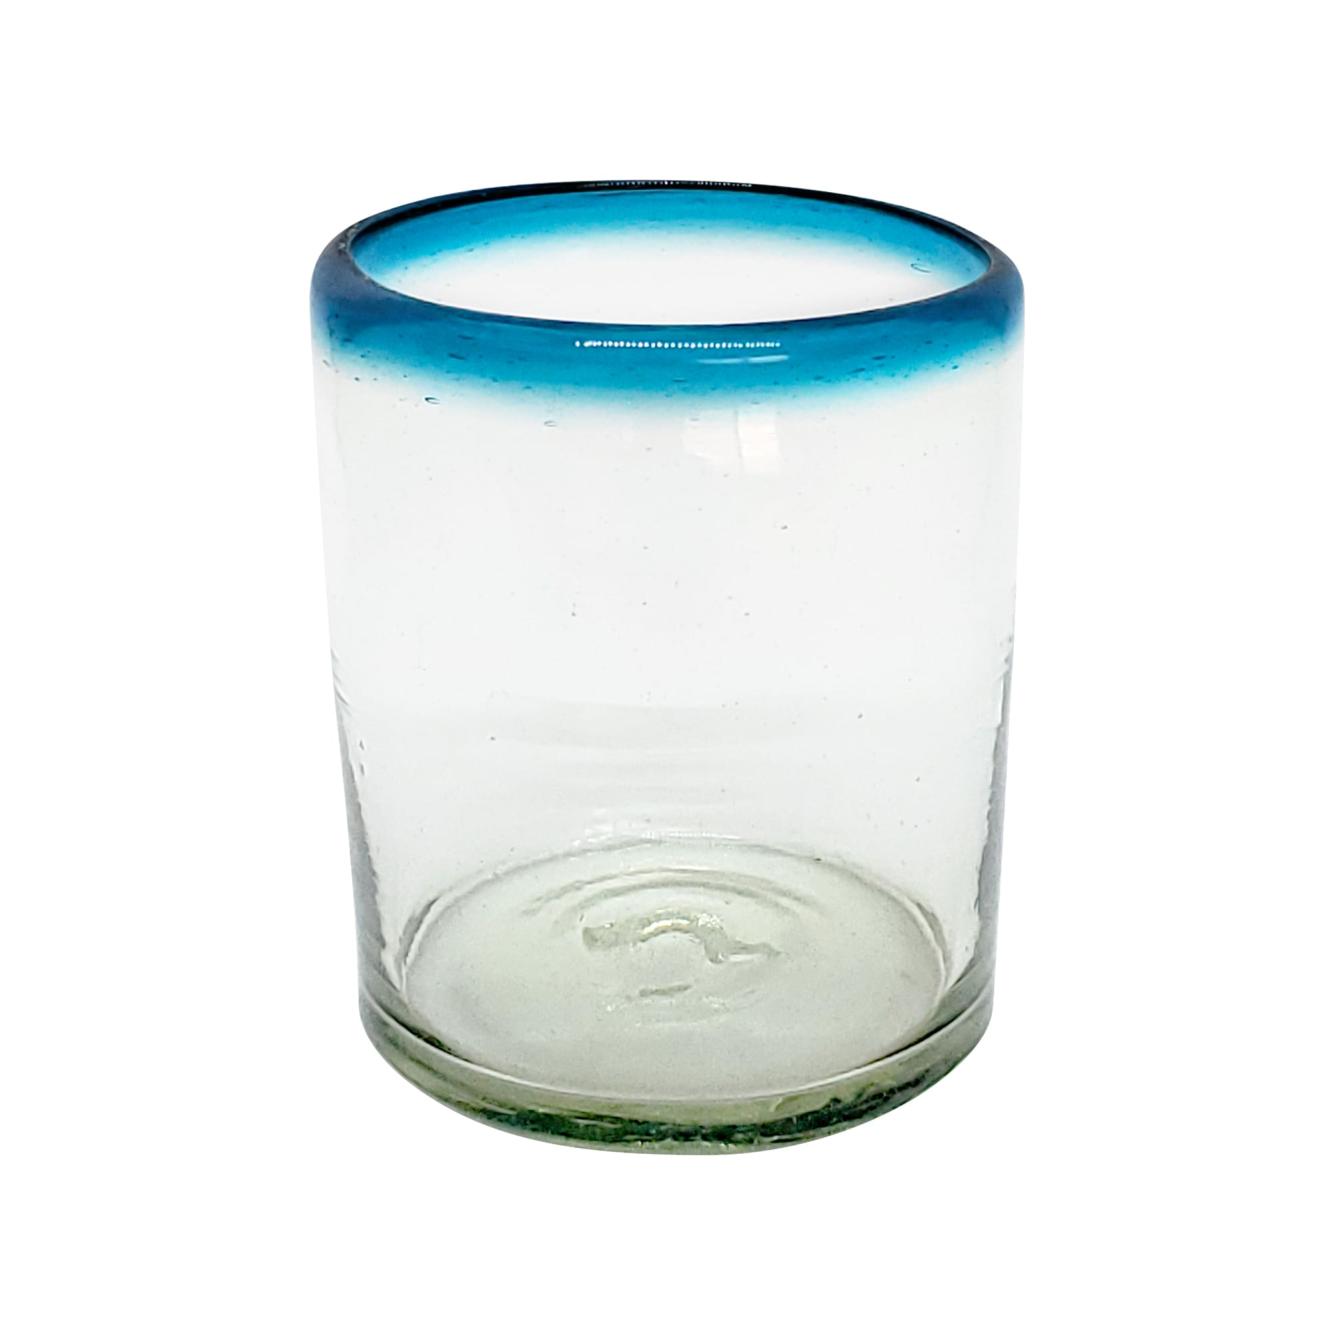 Novedades / vasos chicos con borde azul aqua / Éstos vasos chicos son un gran complemento para su juego de jarra y vasos grandes.